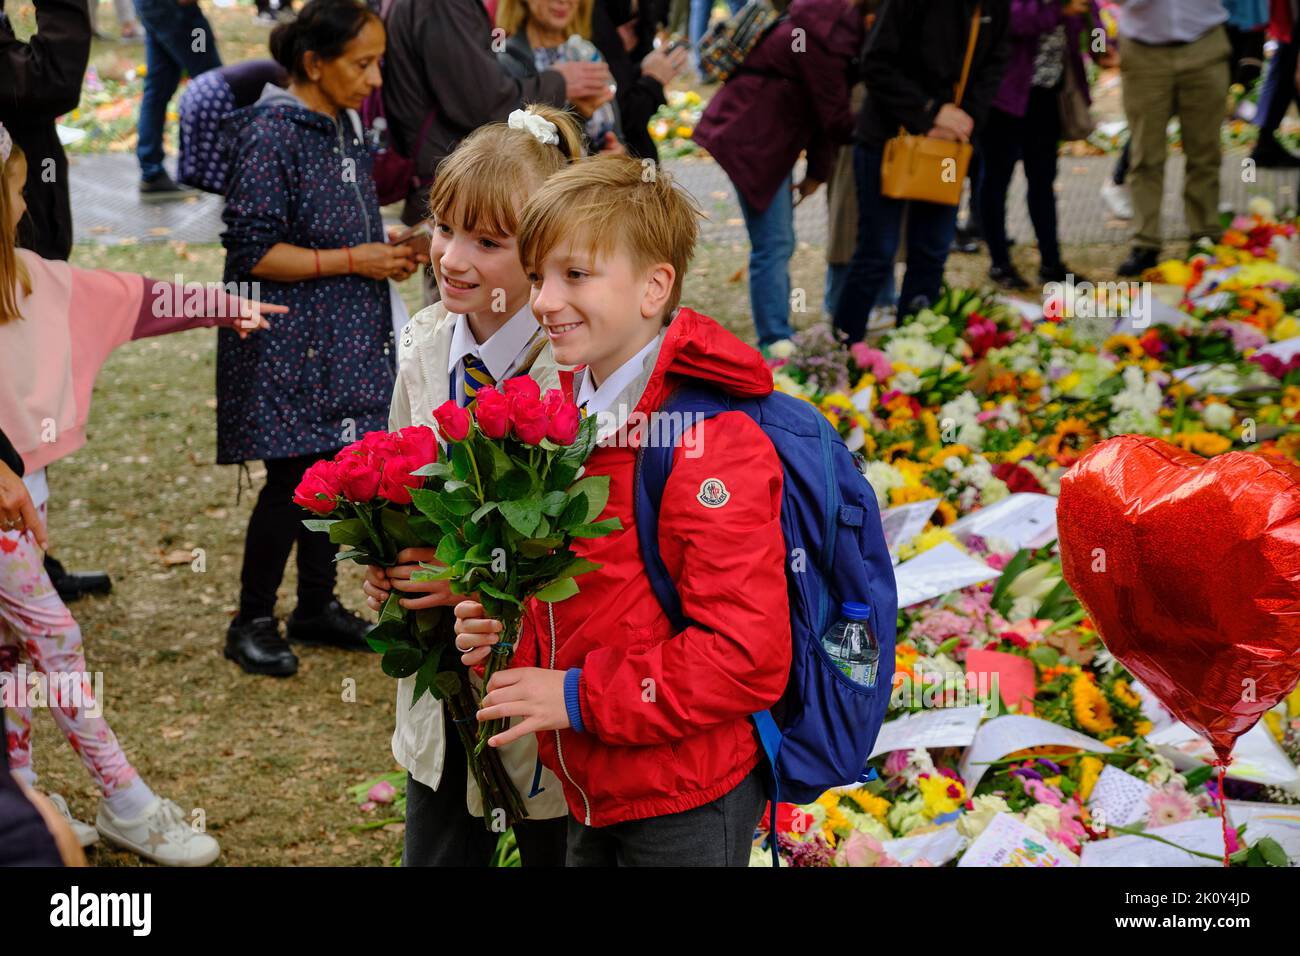 Les enfants apportent des fleurs dans le cadre d'un hommage floral après la mort de la Reine, Green Park, Londres Banque D'Images